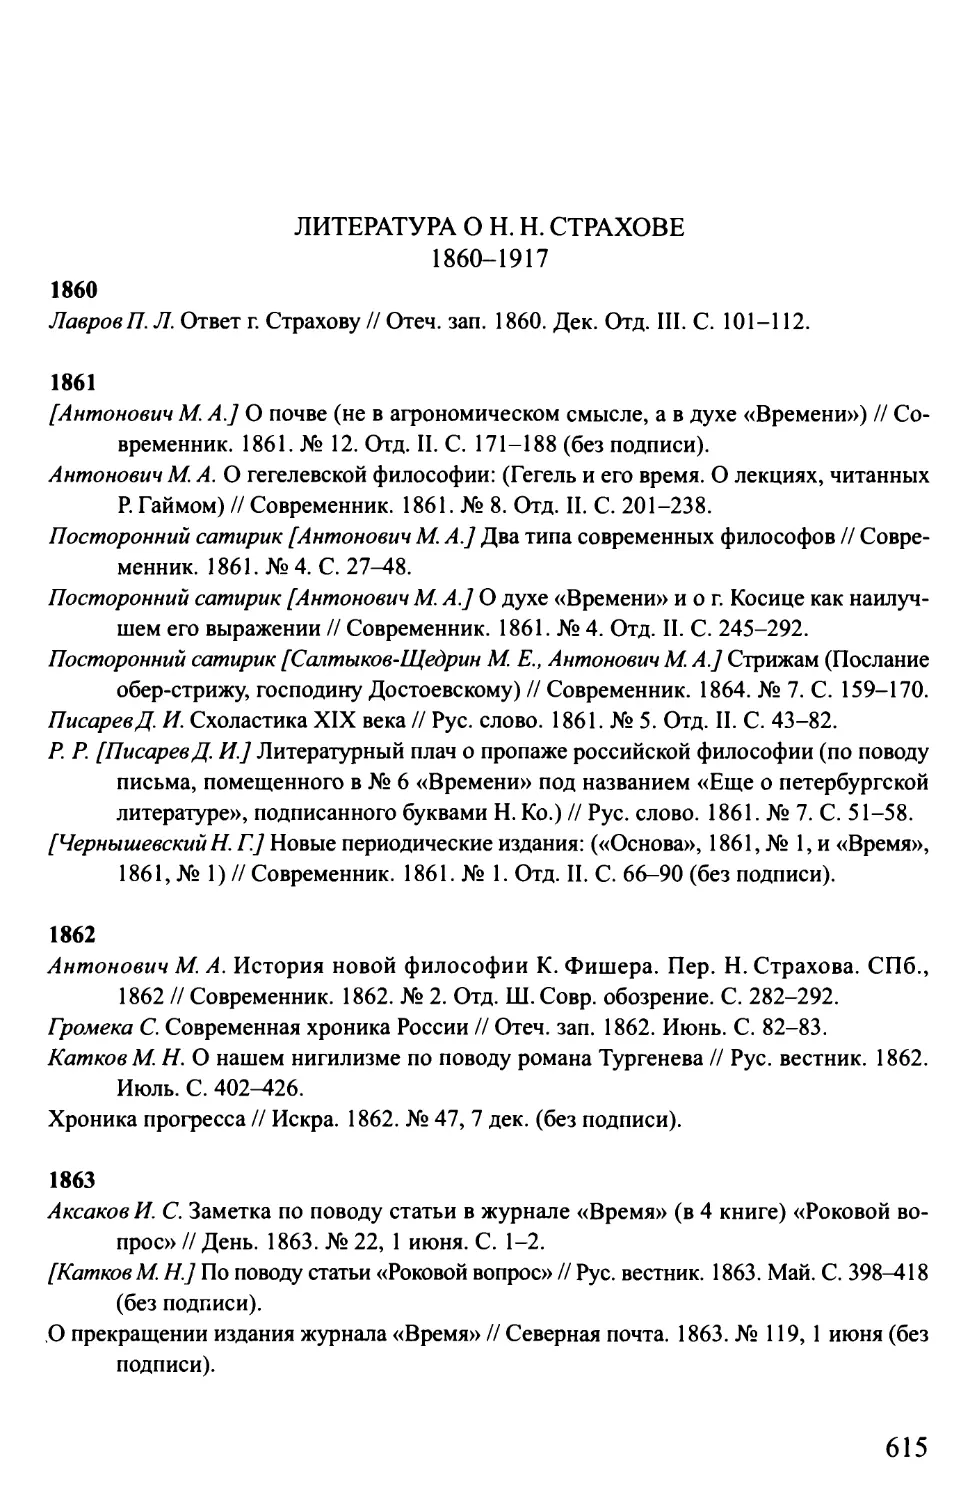 Литература о Н.Н. Страхове. 1860-1917